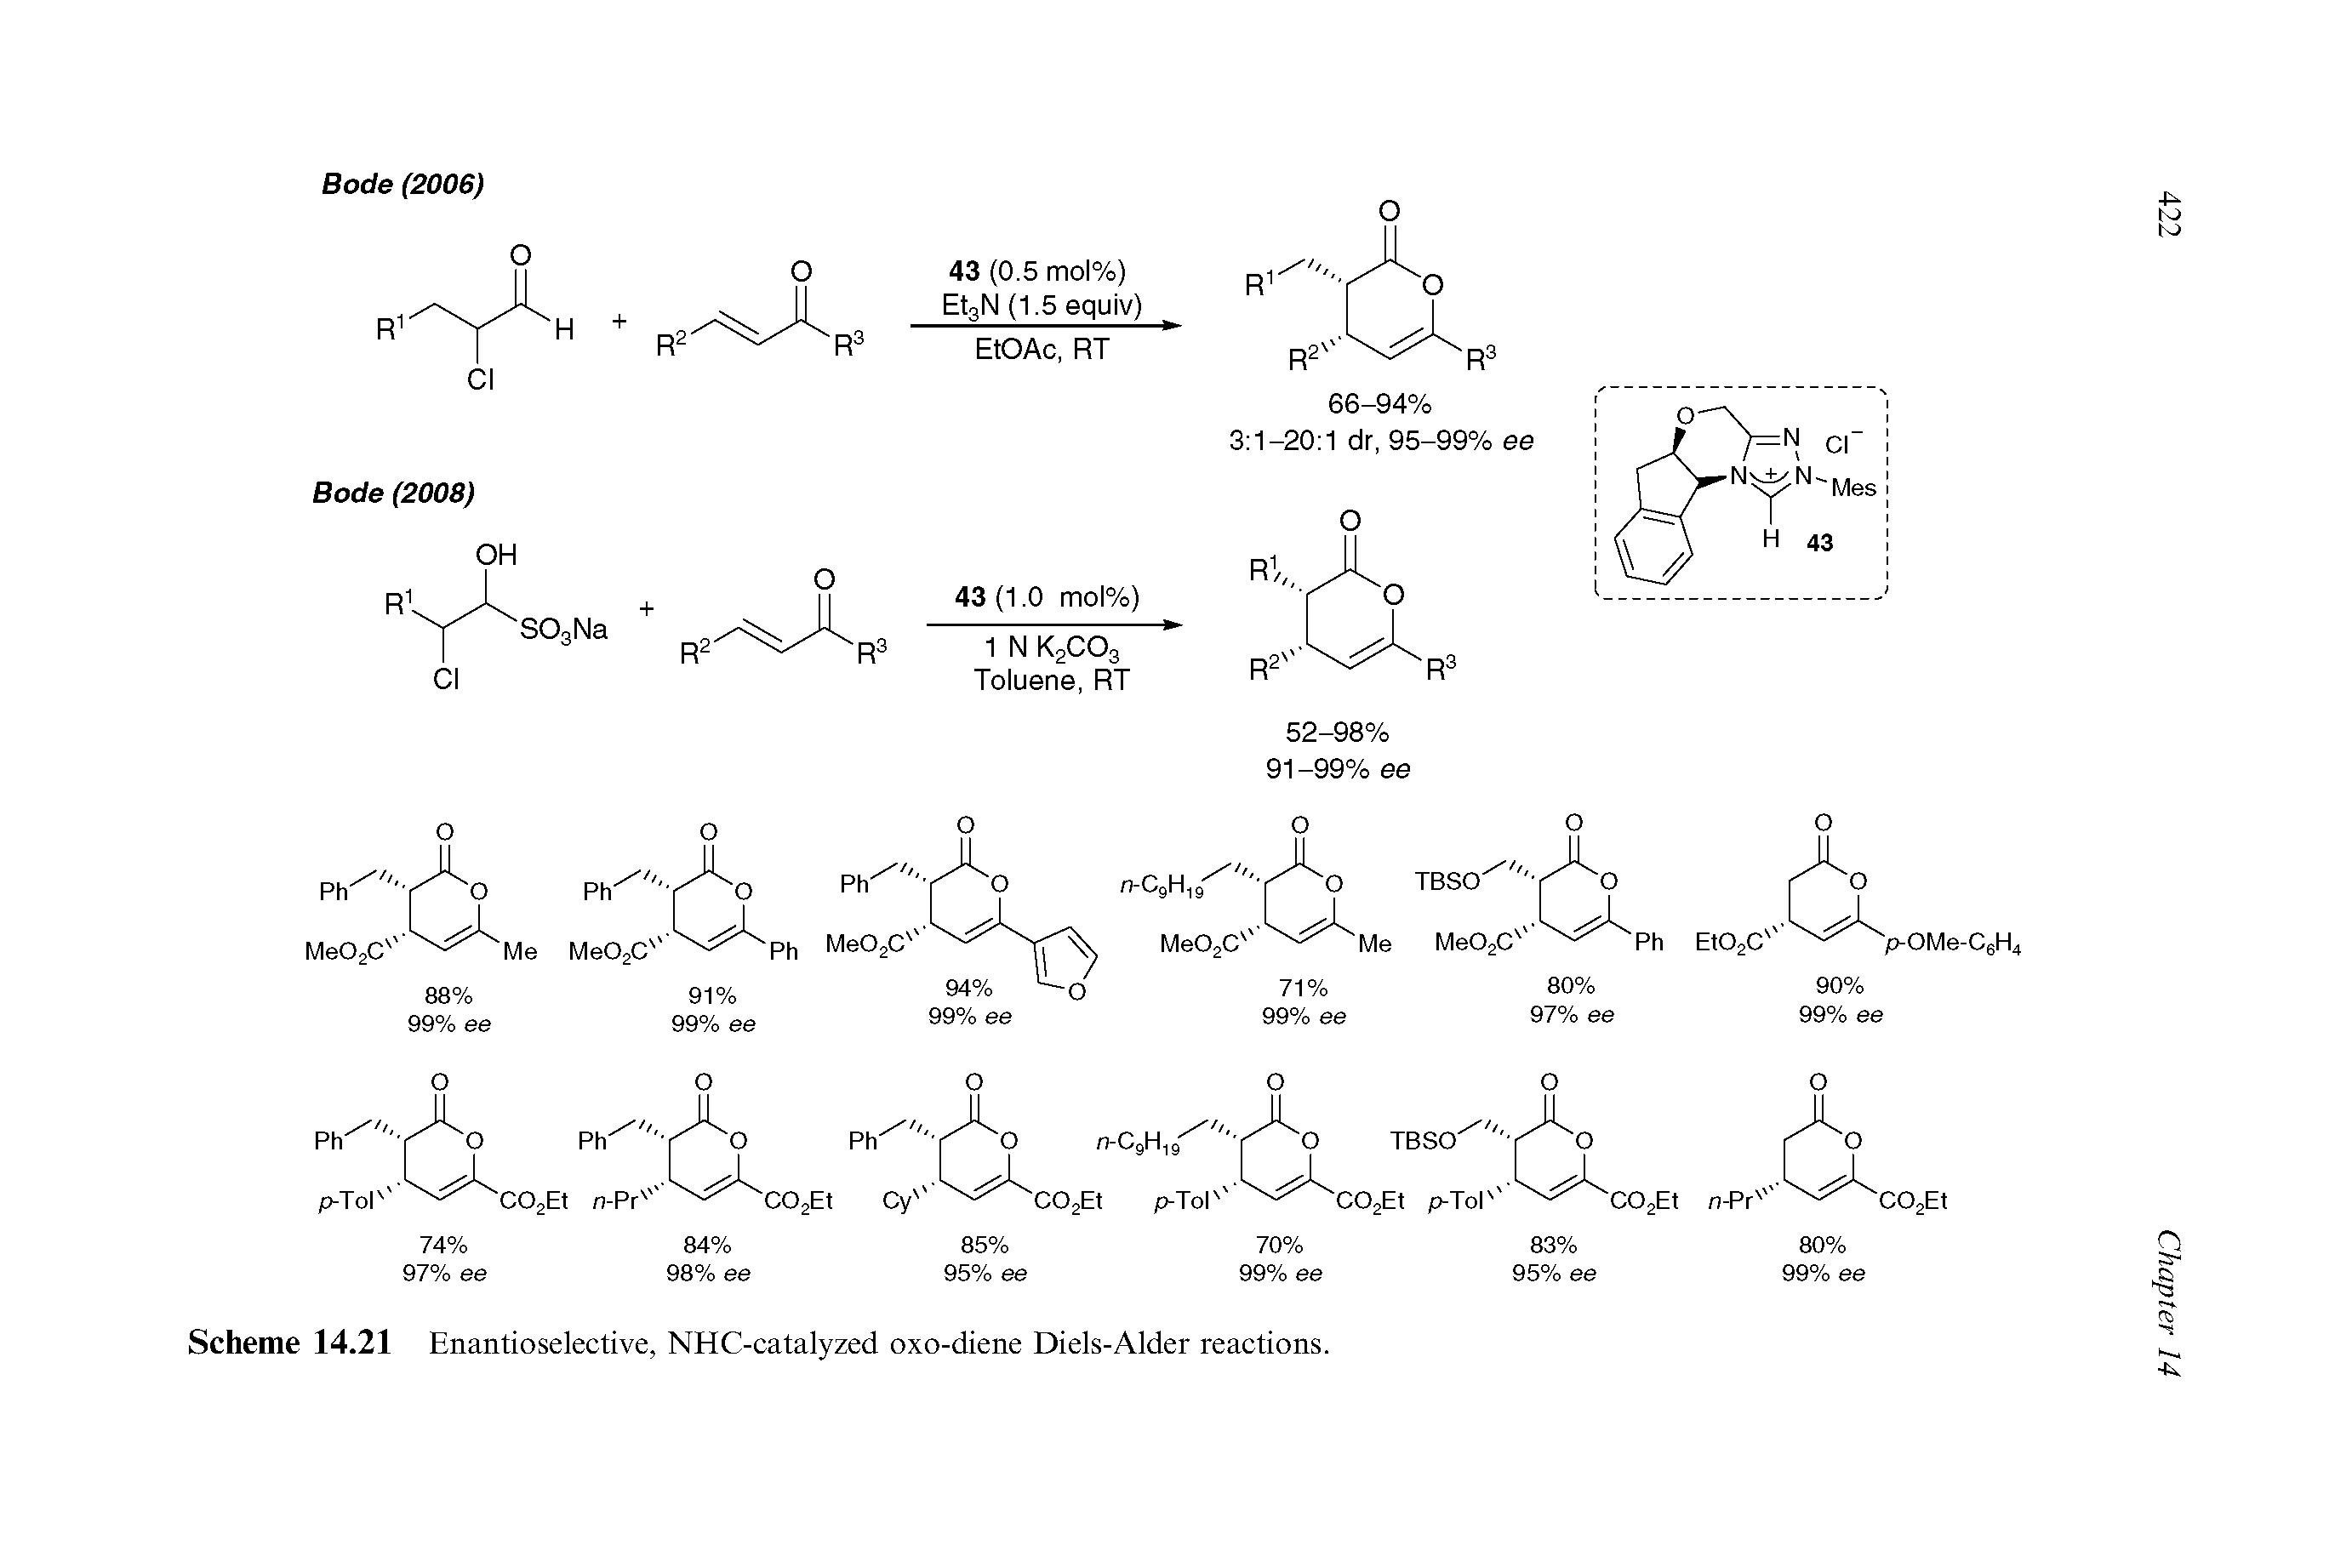 Scheme 14.21 Enantioselective, NHC-catalyzed oxo-diene Diels-Alder reactions.